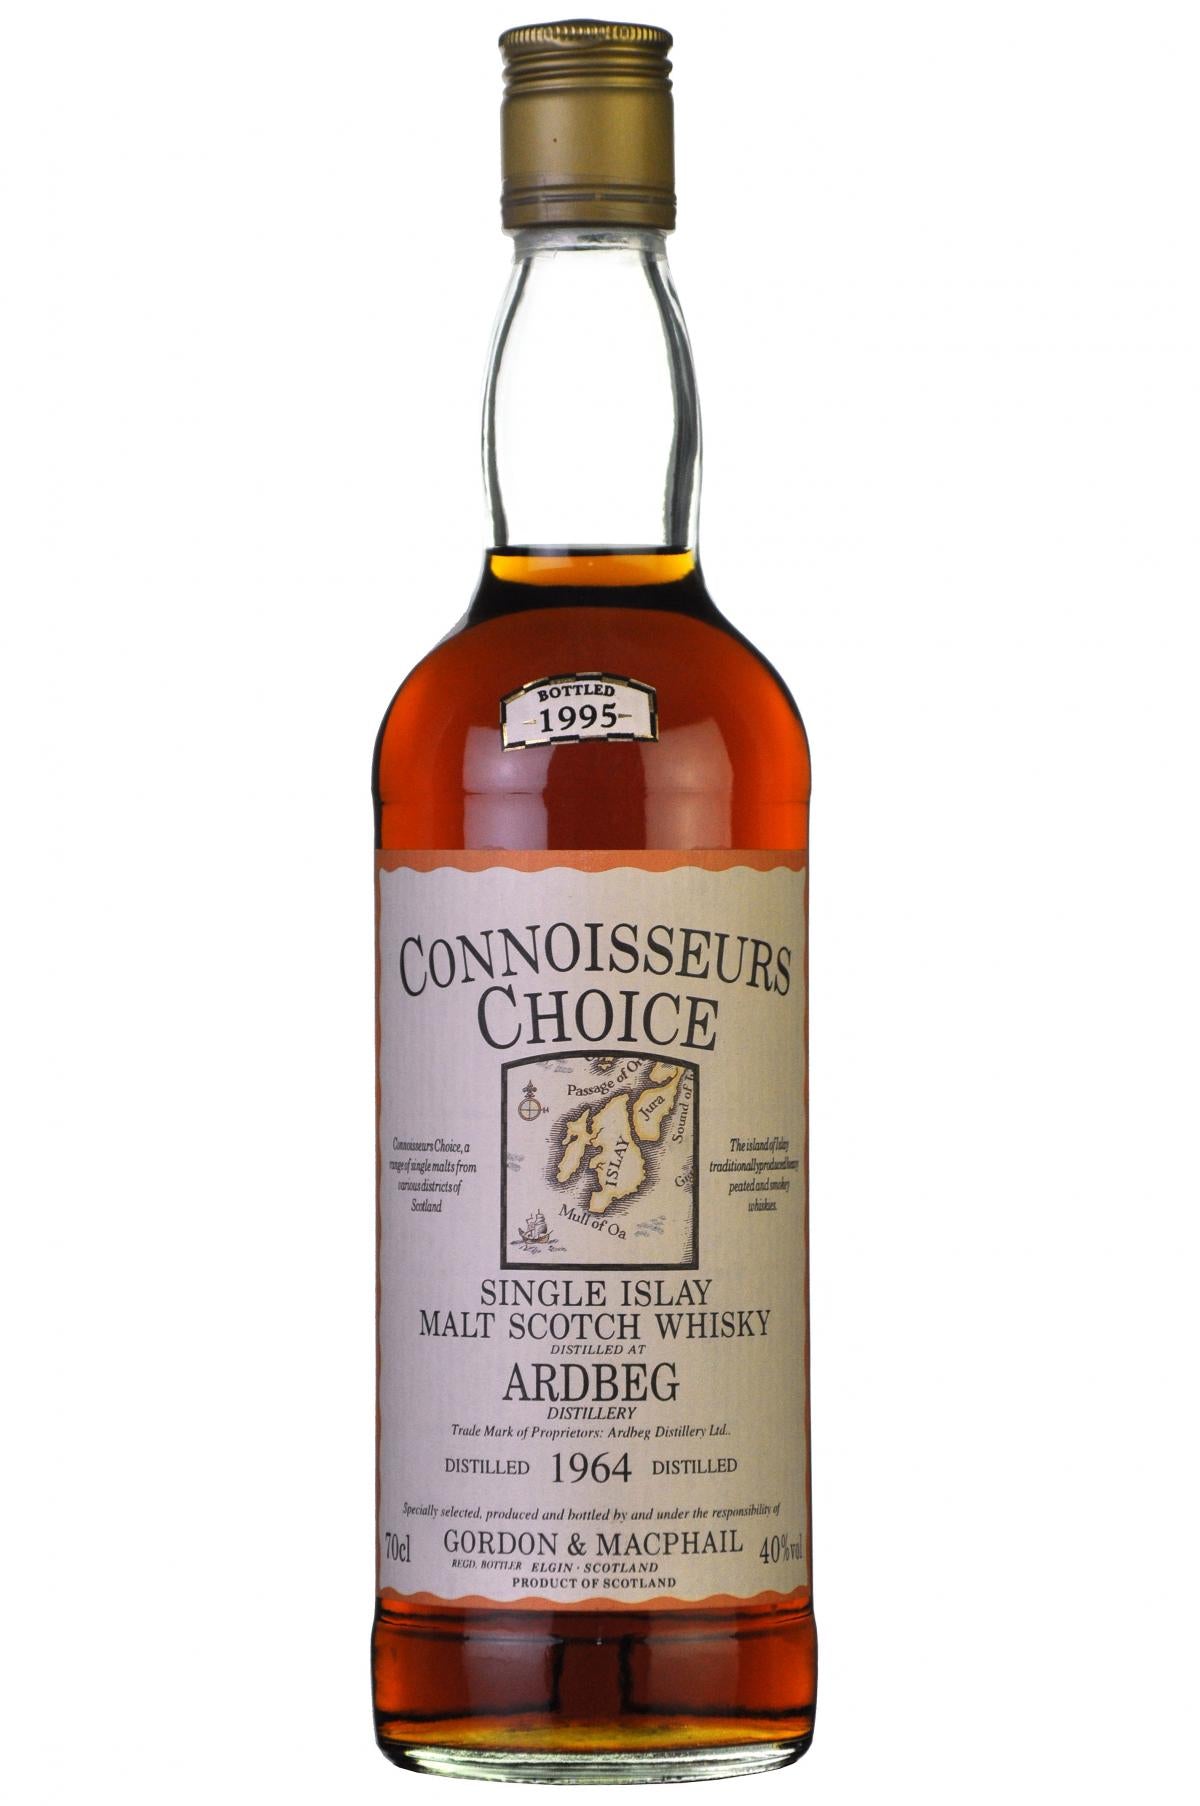 ardbeg 1964-1995, connoisseurs choice gordon and macphail, islay single malt scotch whisky